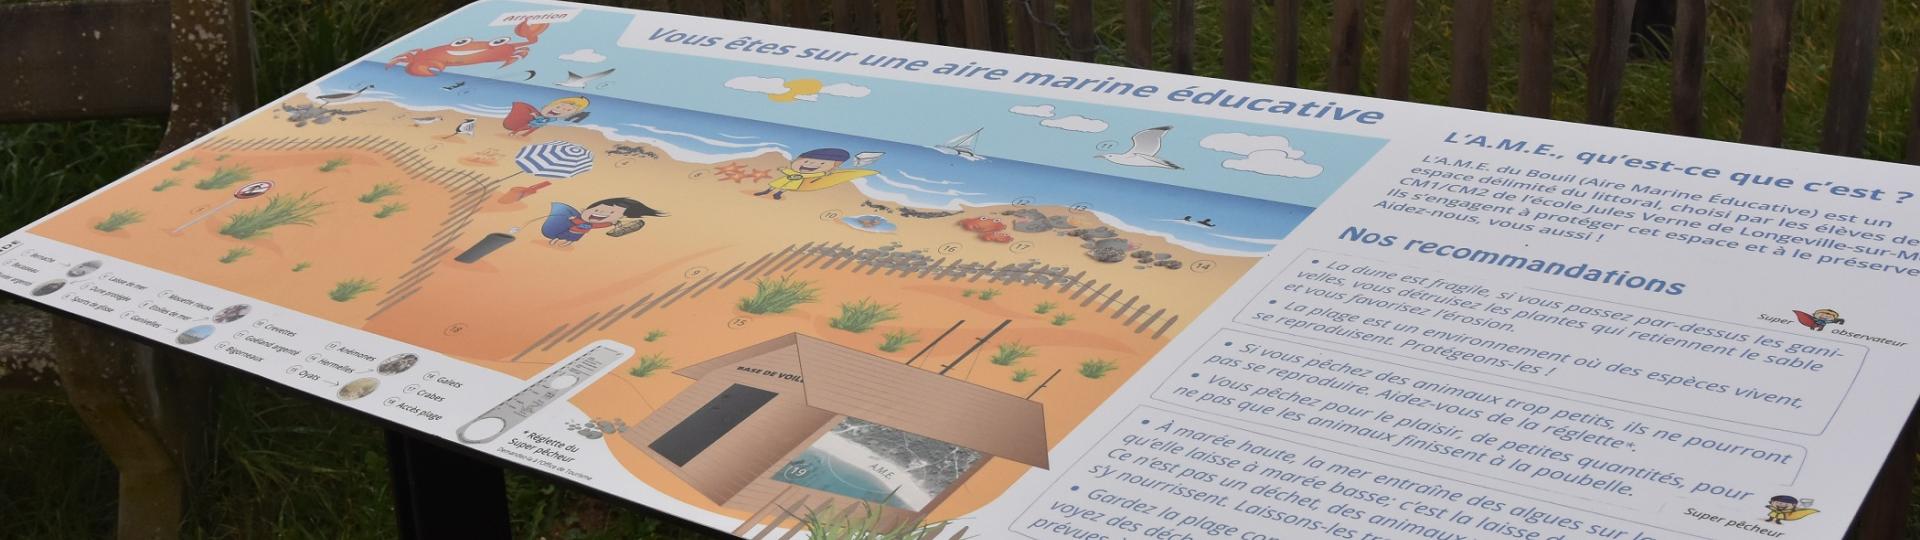 Panneau de l'aire marine éducative de Longeville-sur-mer réalisé par les élèves de l'école Jules Verne